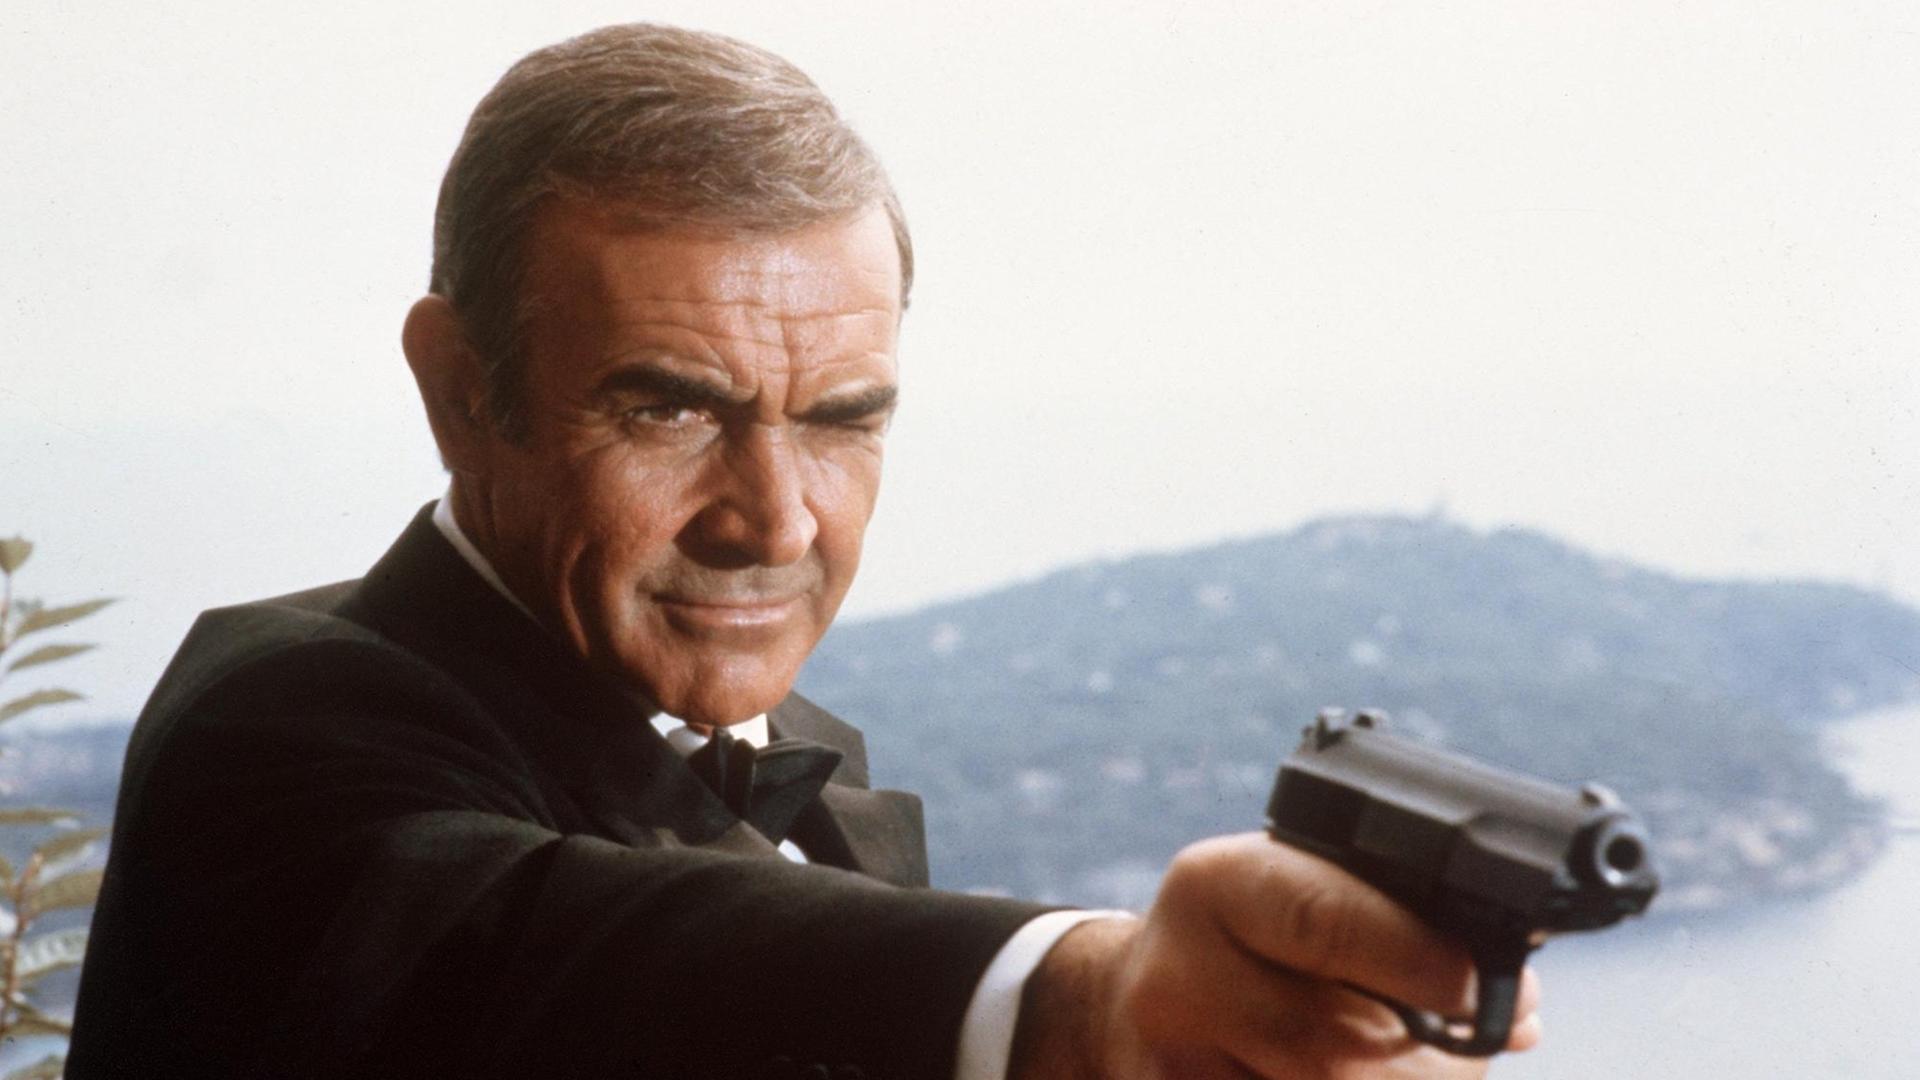 Der britische Schauspieler Sean Connery als 007, Geheimagent seiner Majestät mit der Lizenz zum Töten, in einer Szene des britisch-amerikanischen Films "James Bond - Sag niemals nie". Der Film mit dem Originaltitel "Never say never again" kam 1983 in die Kinos, Regie führte Irvin Kershner.